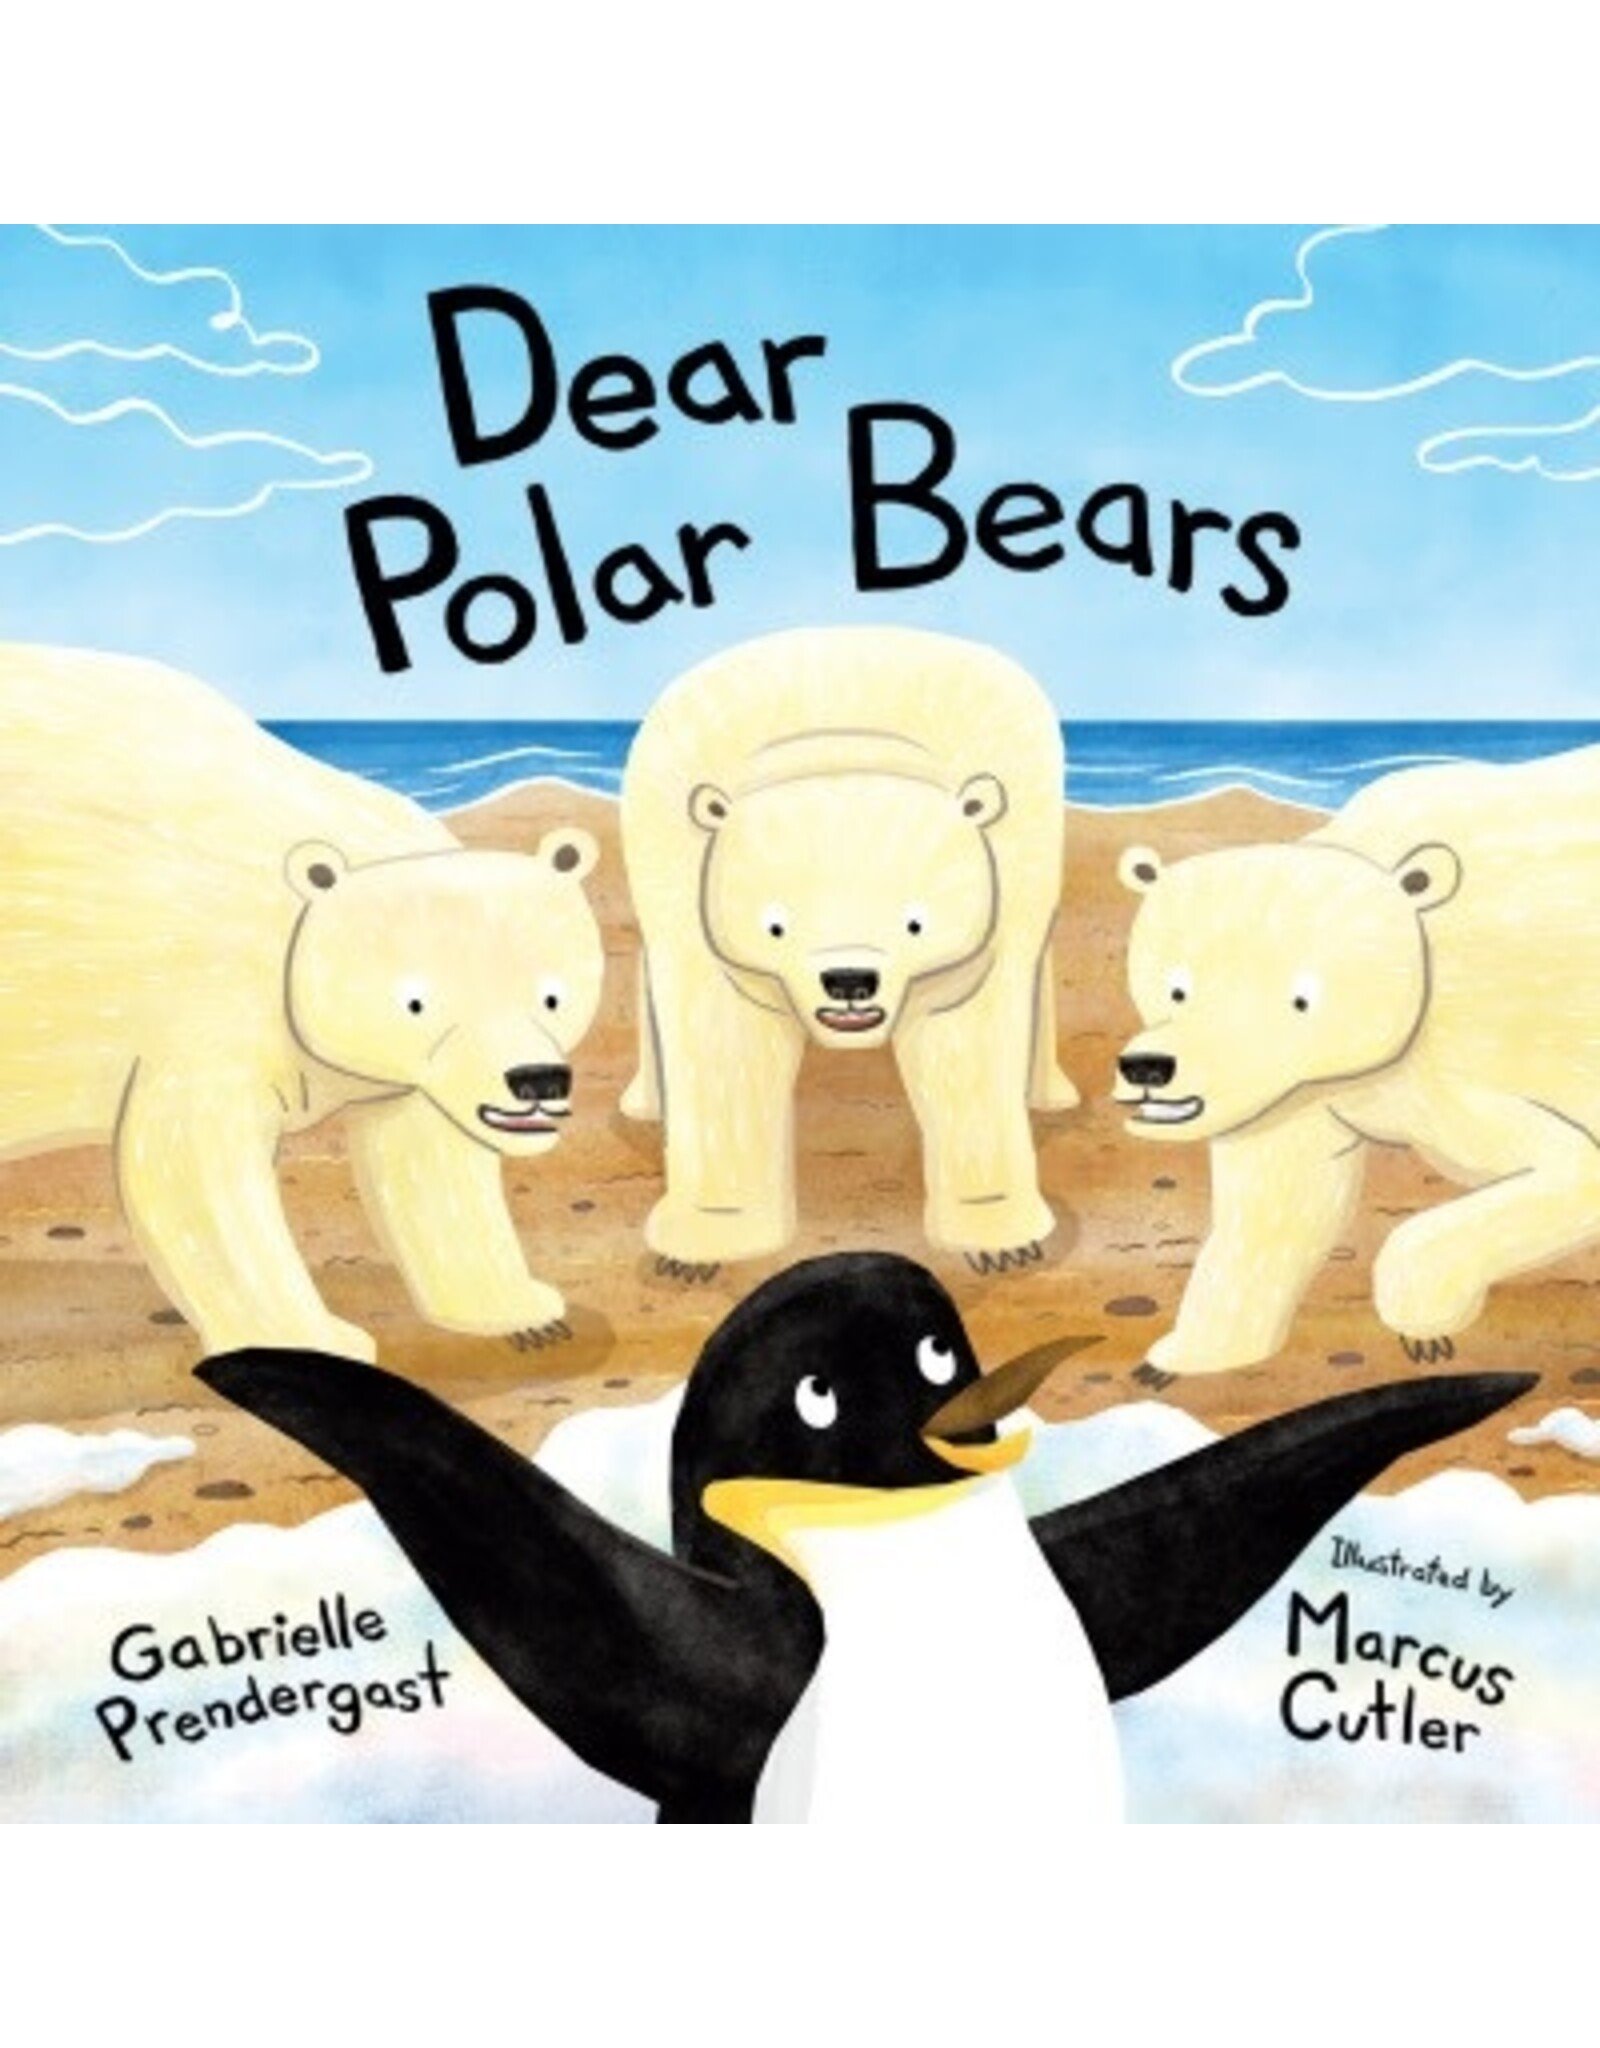 Orca Book Publishers Dear Polar Bears